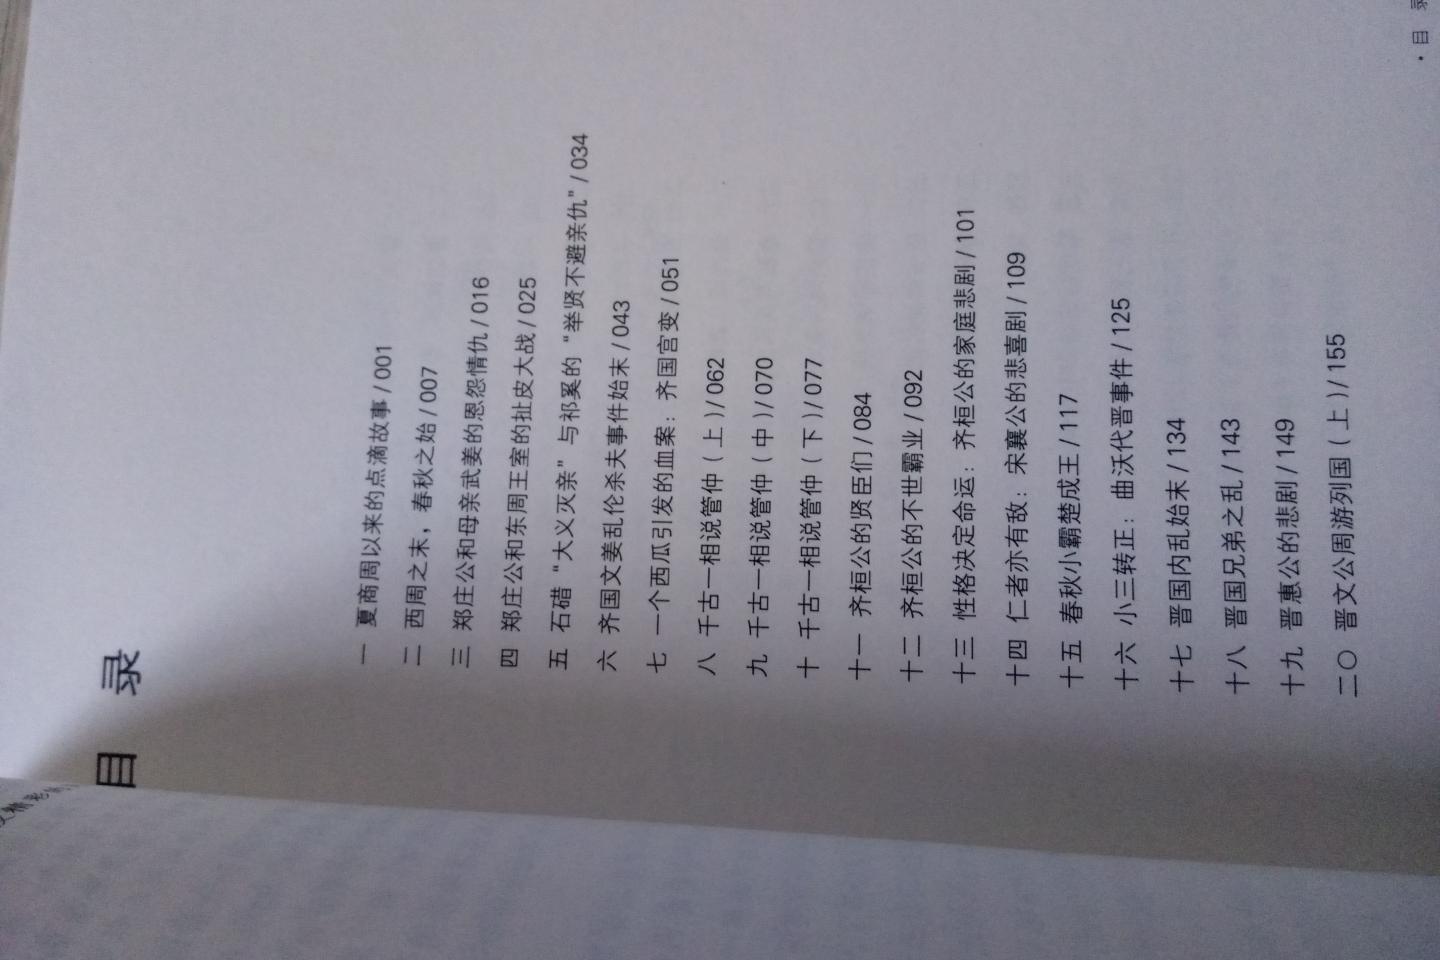 姜狼的作品，收入历史中国白金升级版。现代出版社2017年7月一版一印，比2013年5月该出版社的同名图书更悦眼。